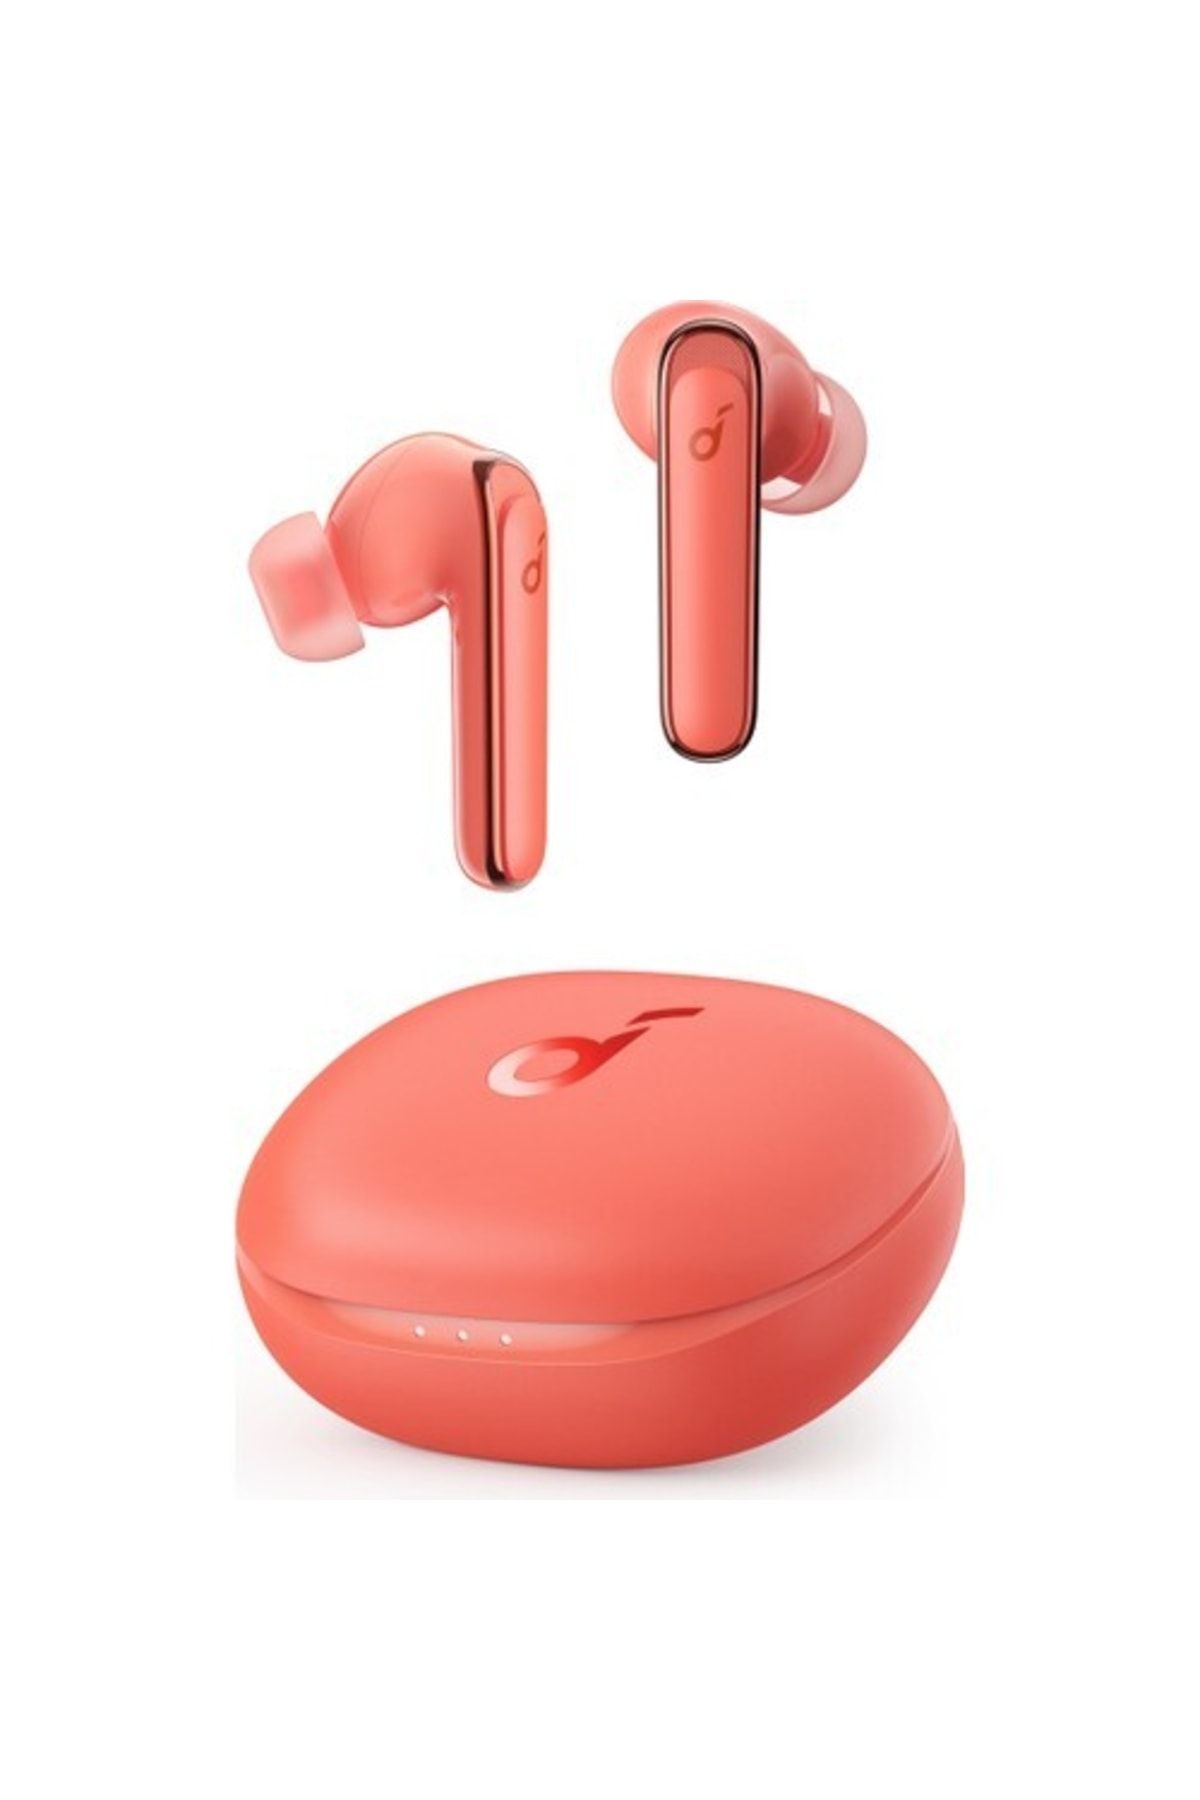 Anker Soundcore Life P3 Tws Bluetooth 5.2 Kulaklık - Oyun Modu - Hibrit Aktif Gürültü Önleme Mercan